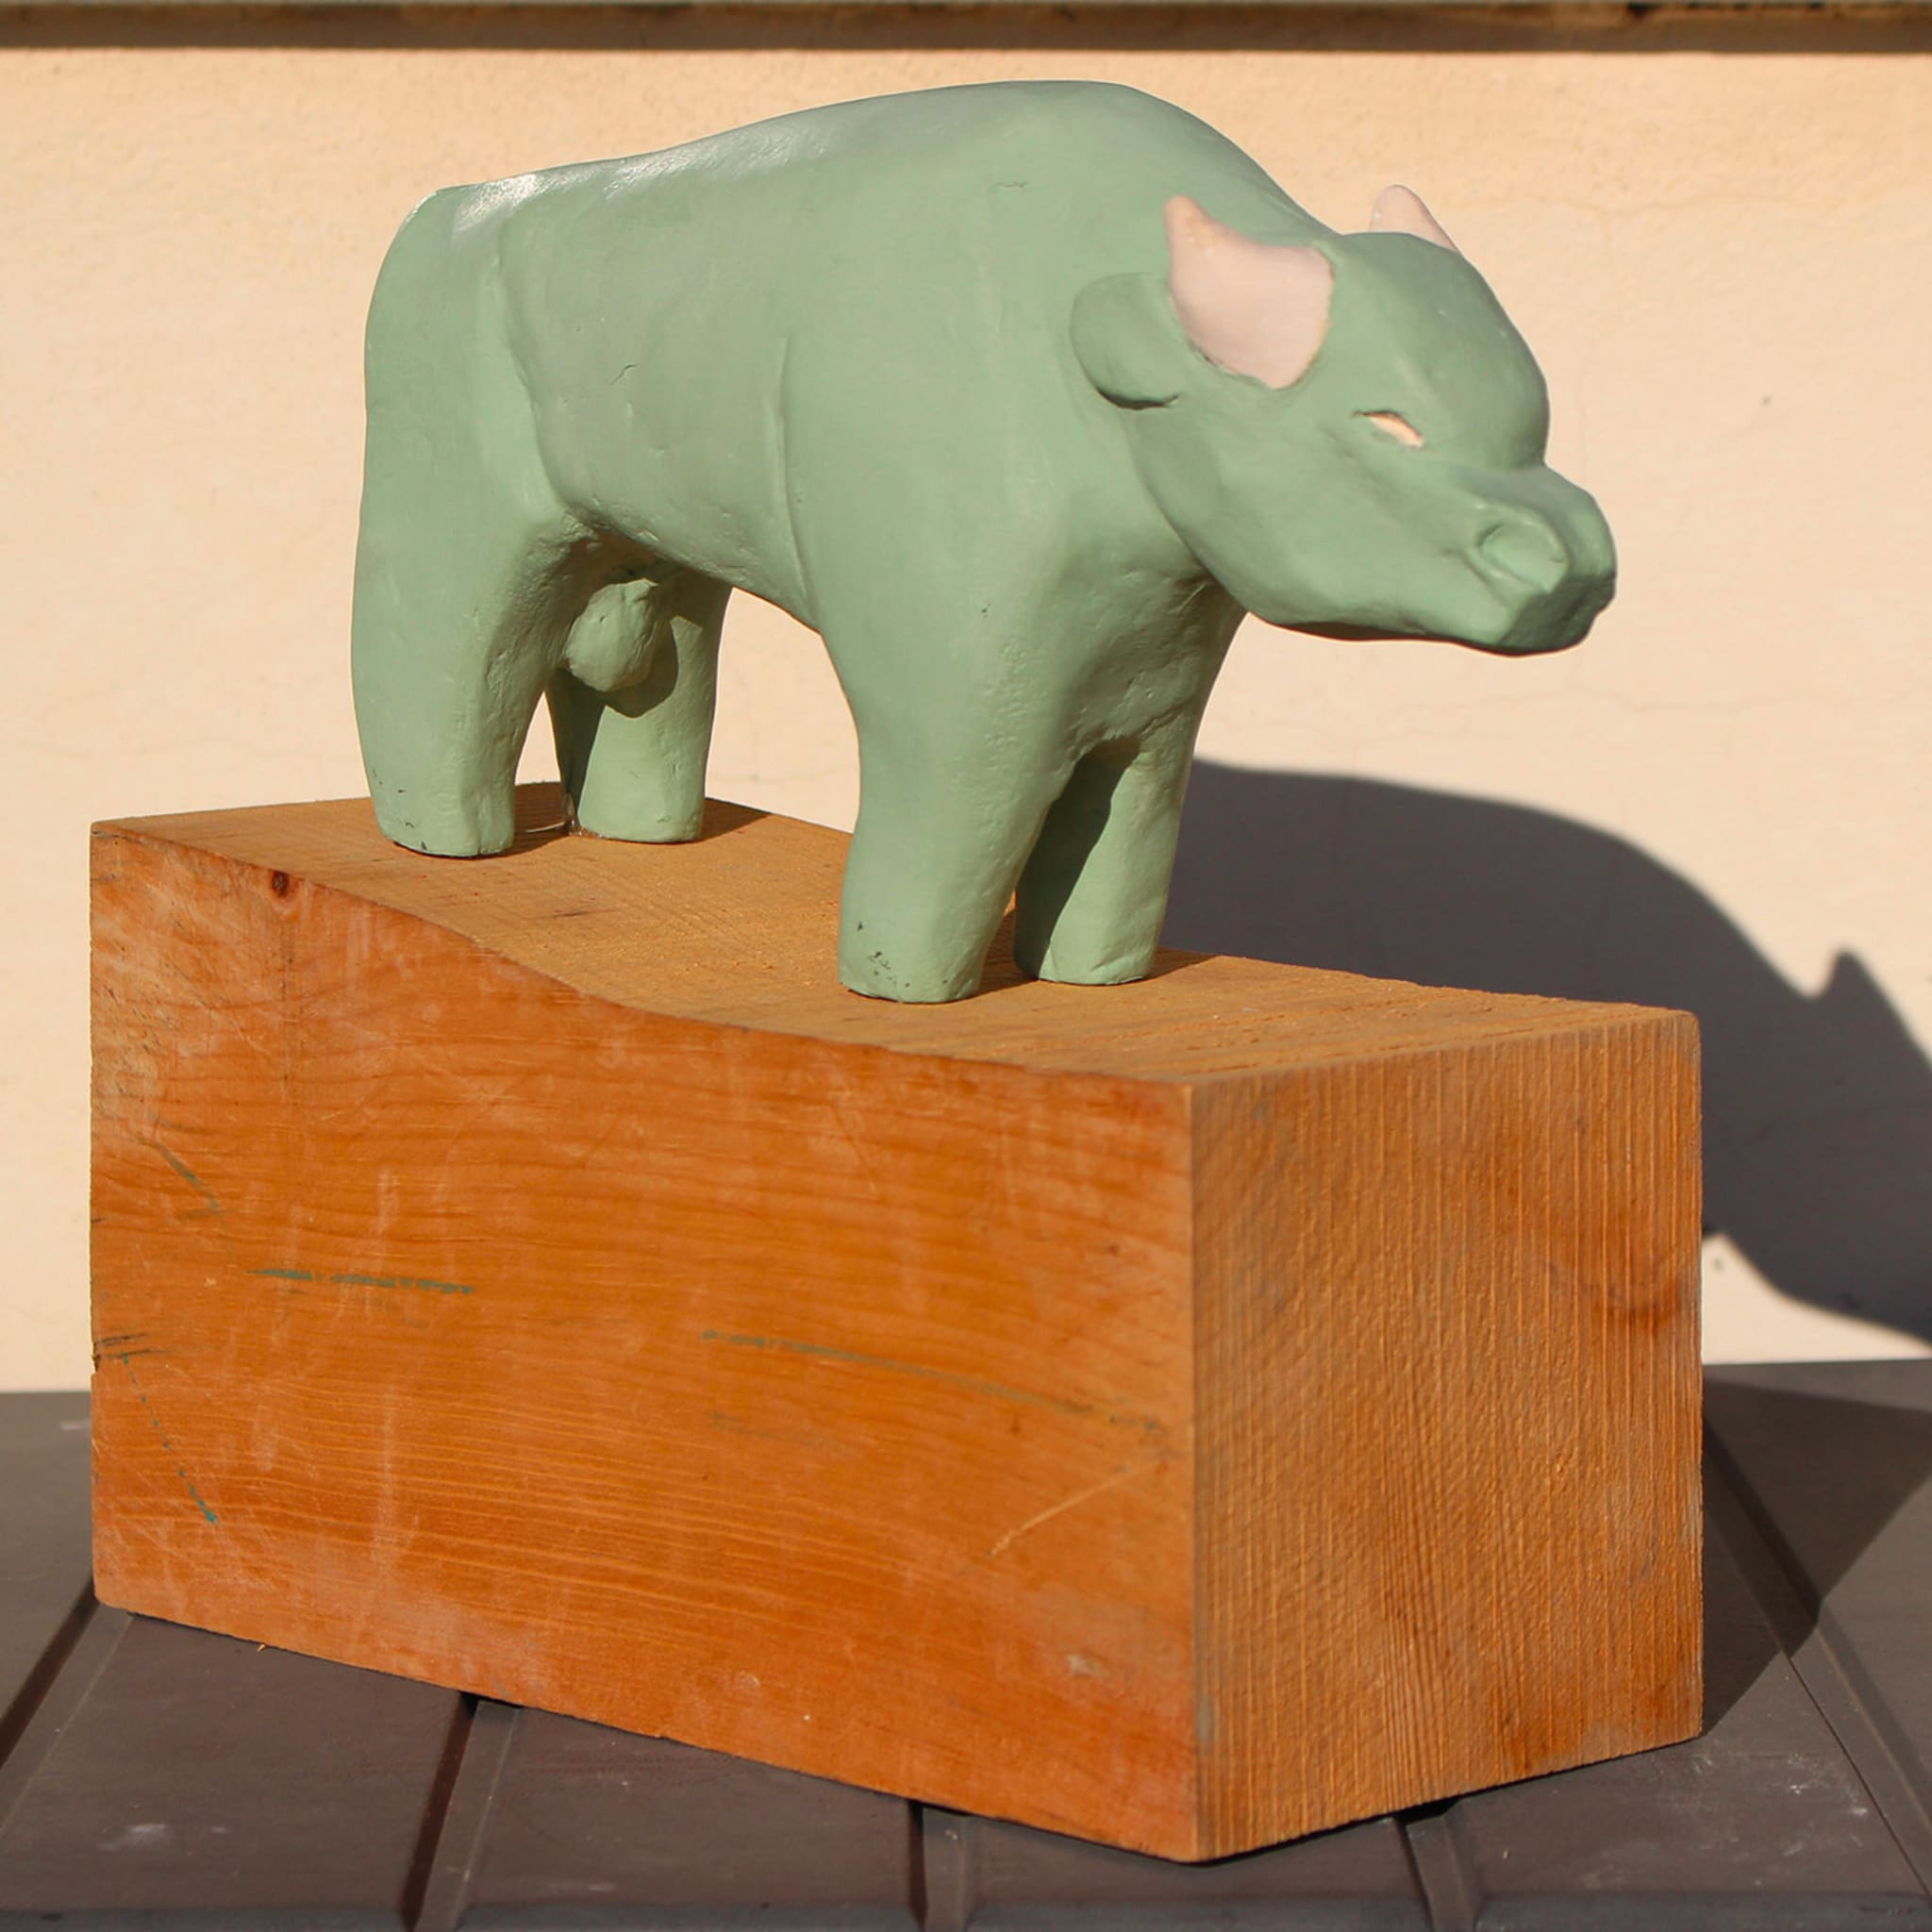 Green Buffalo Sculpture - Alternative view 1